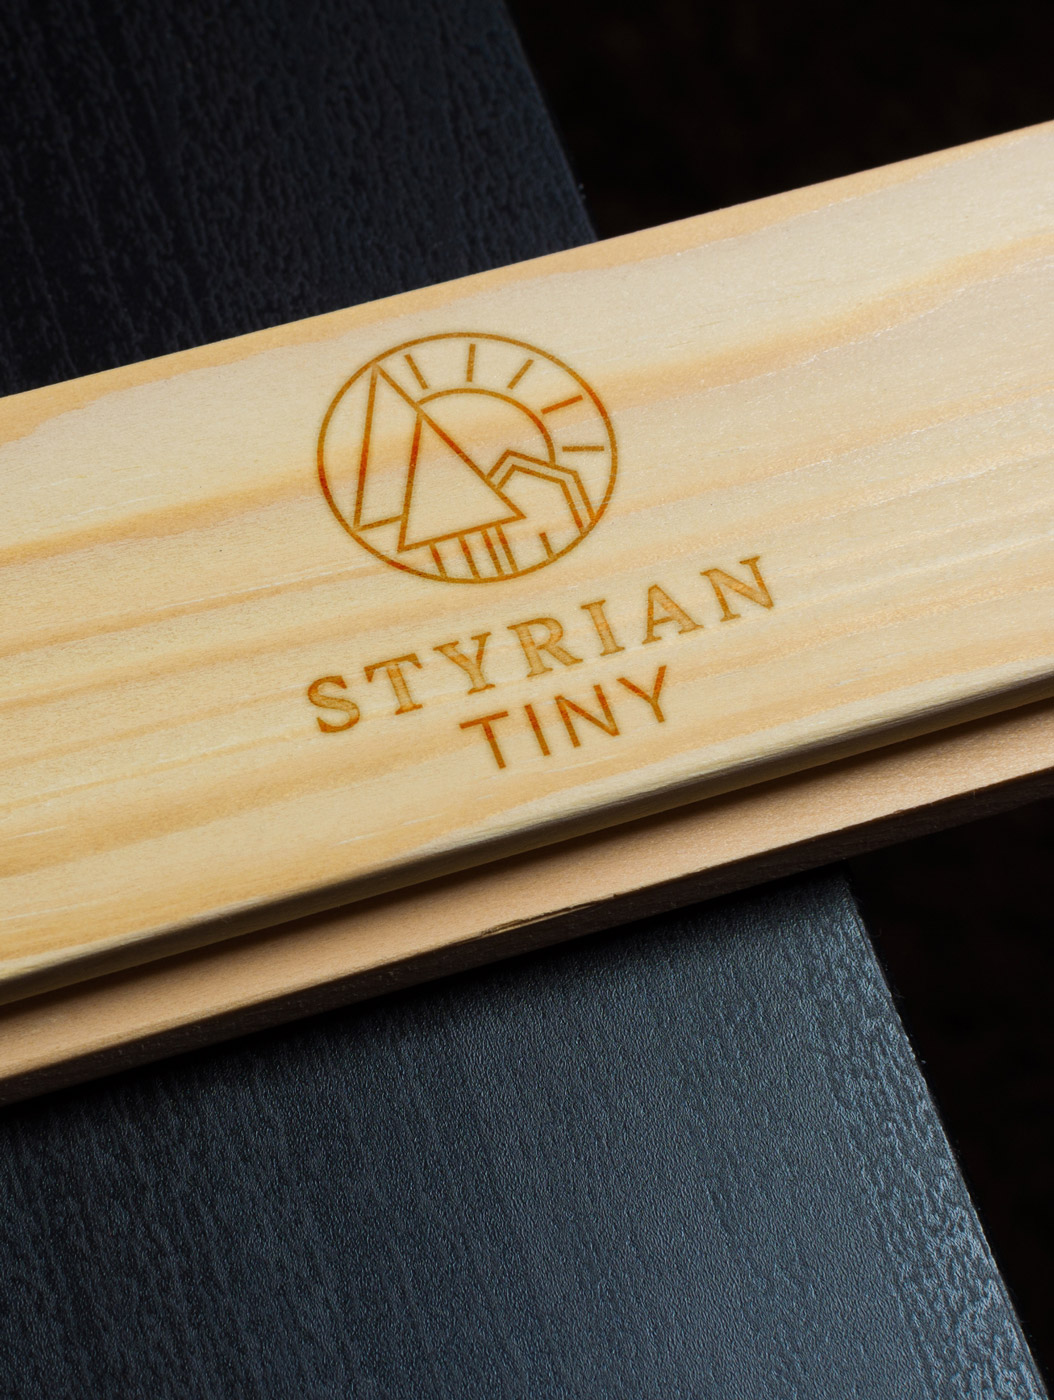 styrian-tiny_wood-burned